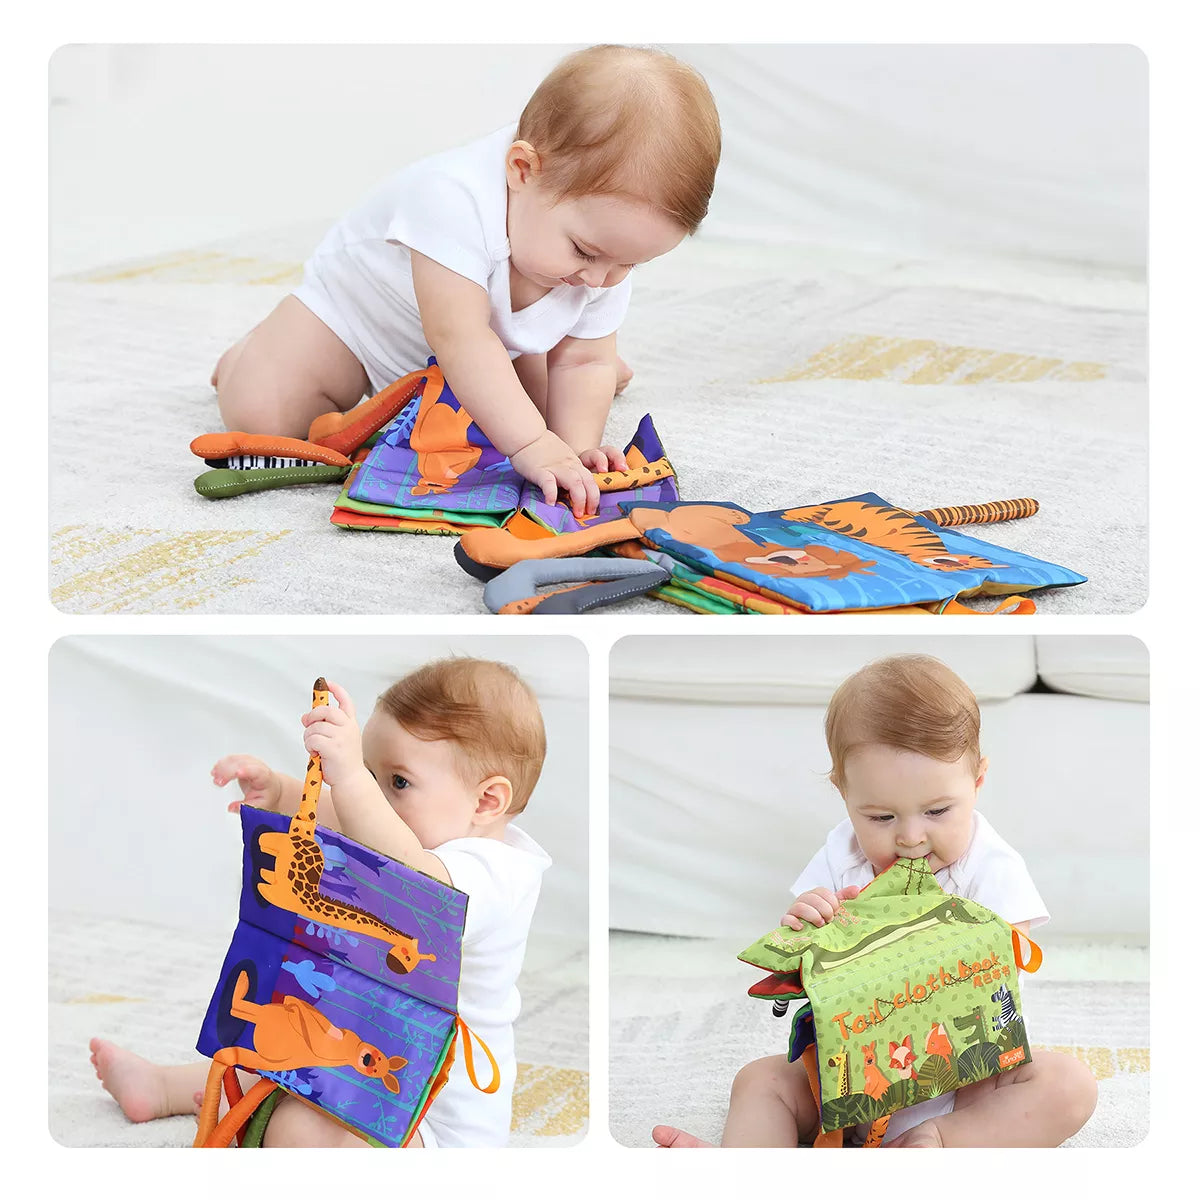 布の本、感覚ブックのおもちゃ、ソフト ジャングル テール、スクイーカーとクリンクル音、ビジー ブック学習玩具、赤ちゃん、幼児 3 か月以上